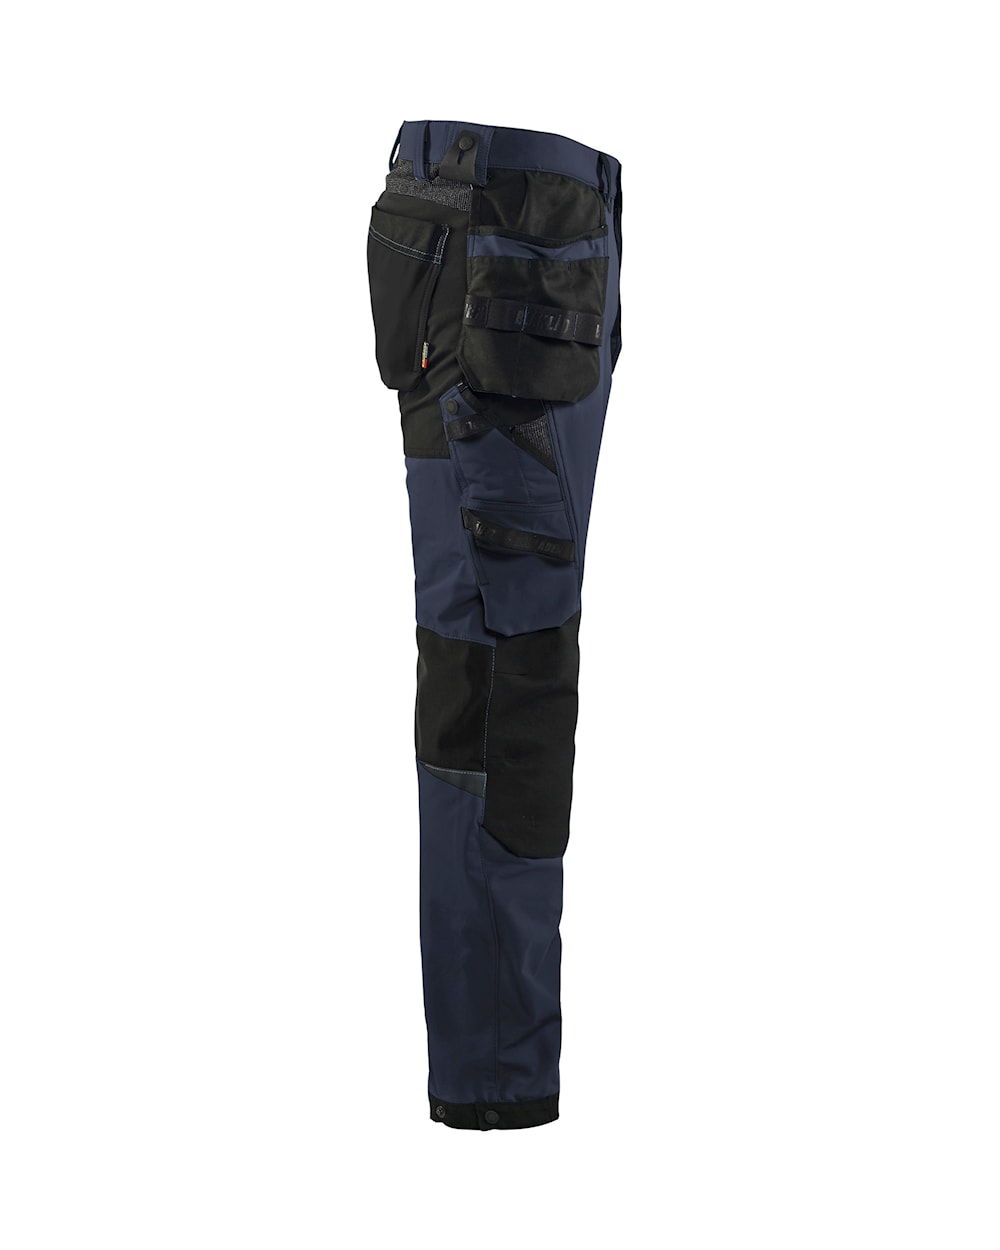 Blaklader Craftsman Trousers 4-Way Stretch 1522 - Dark Navy/Black